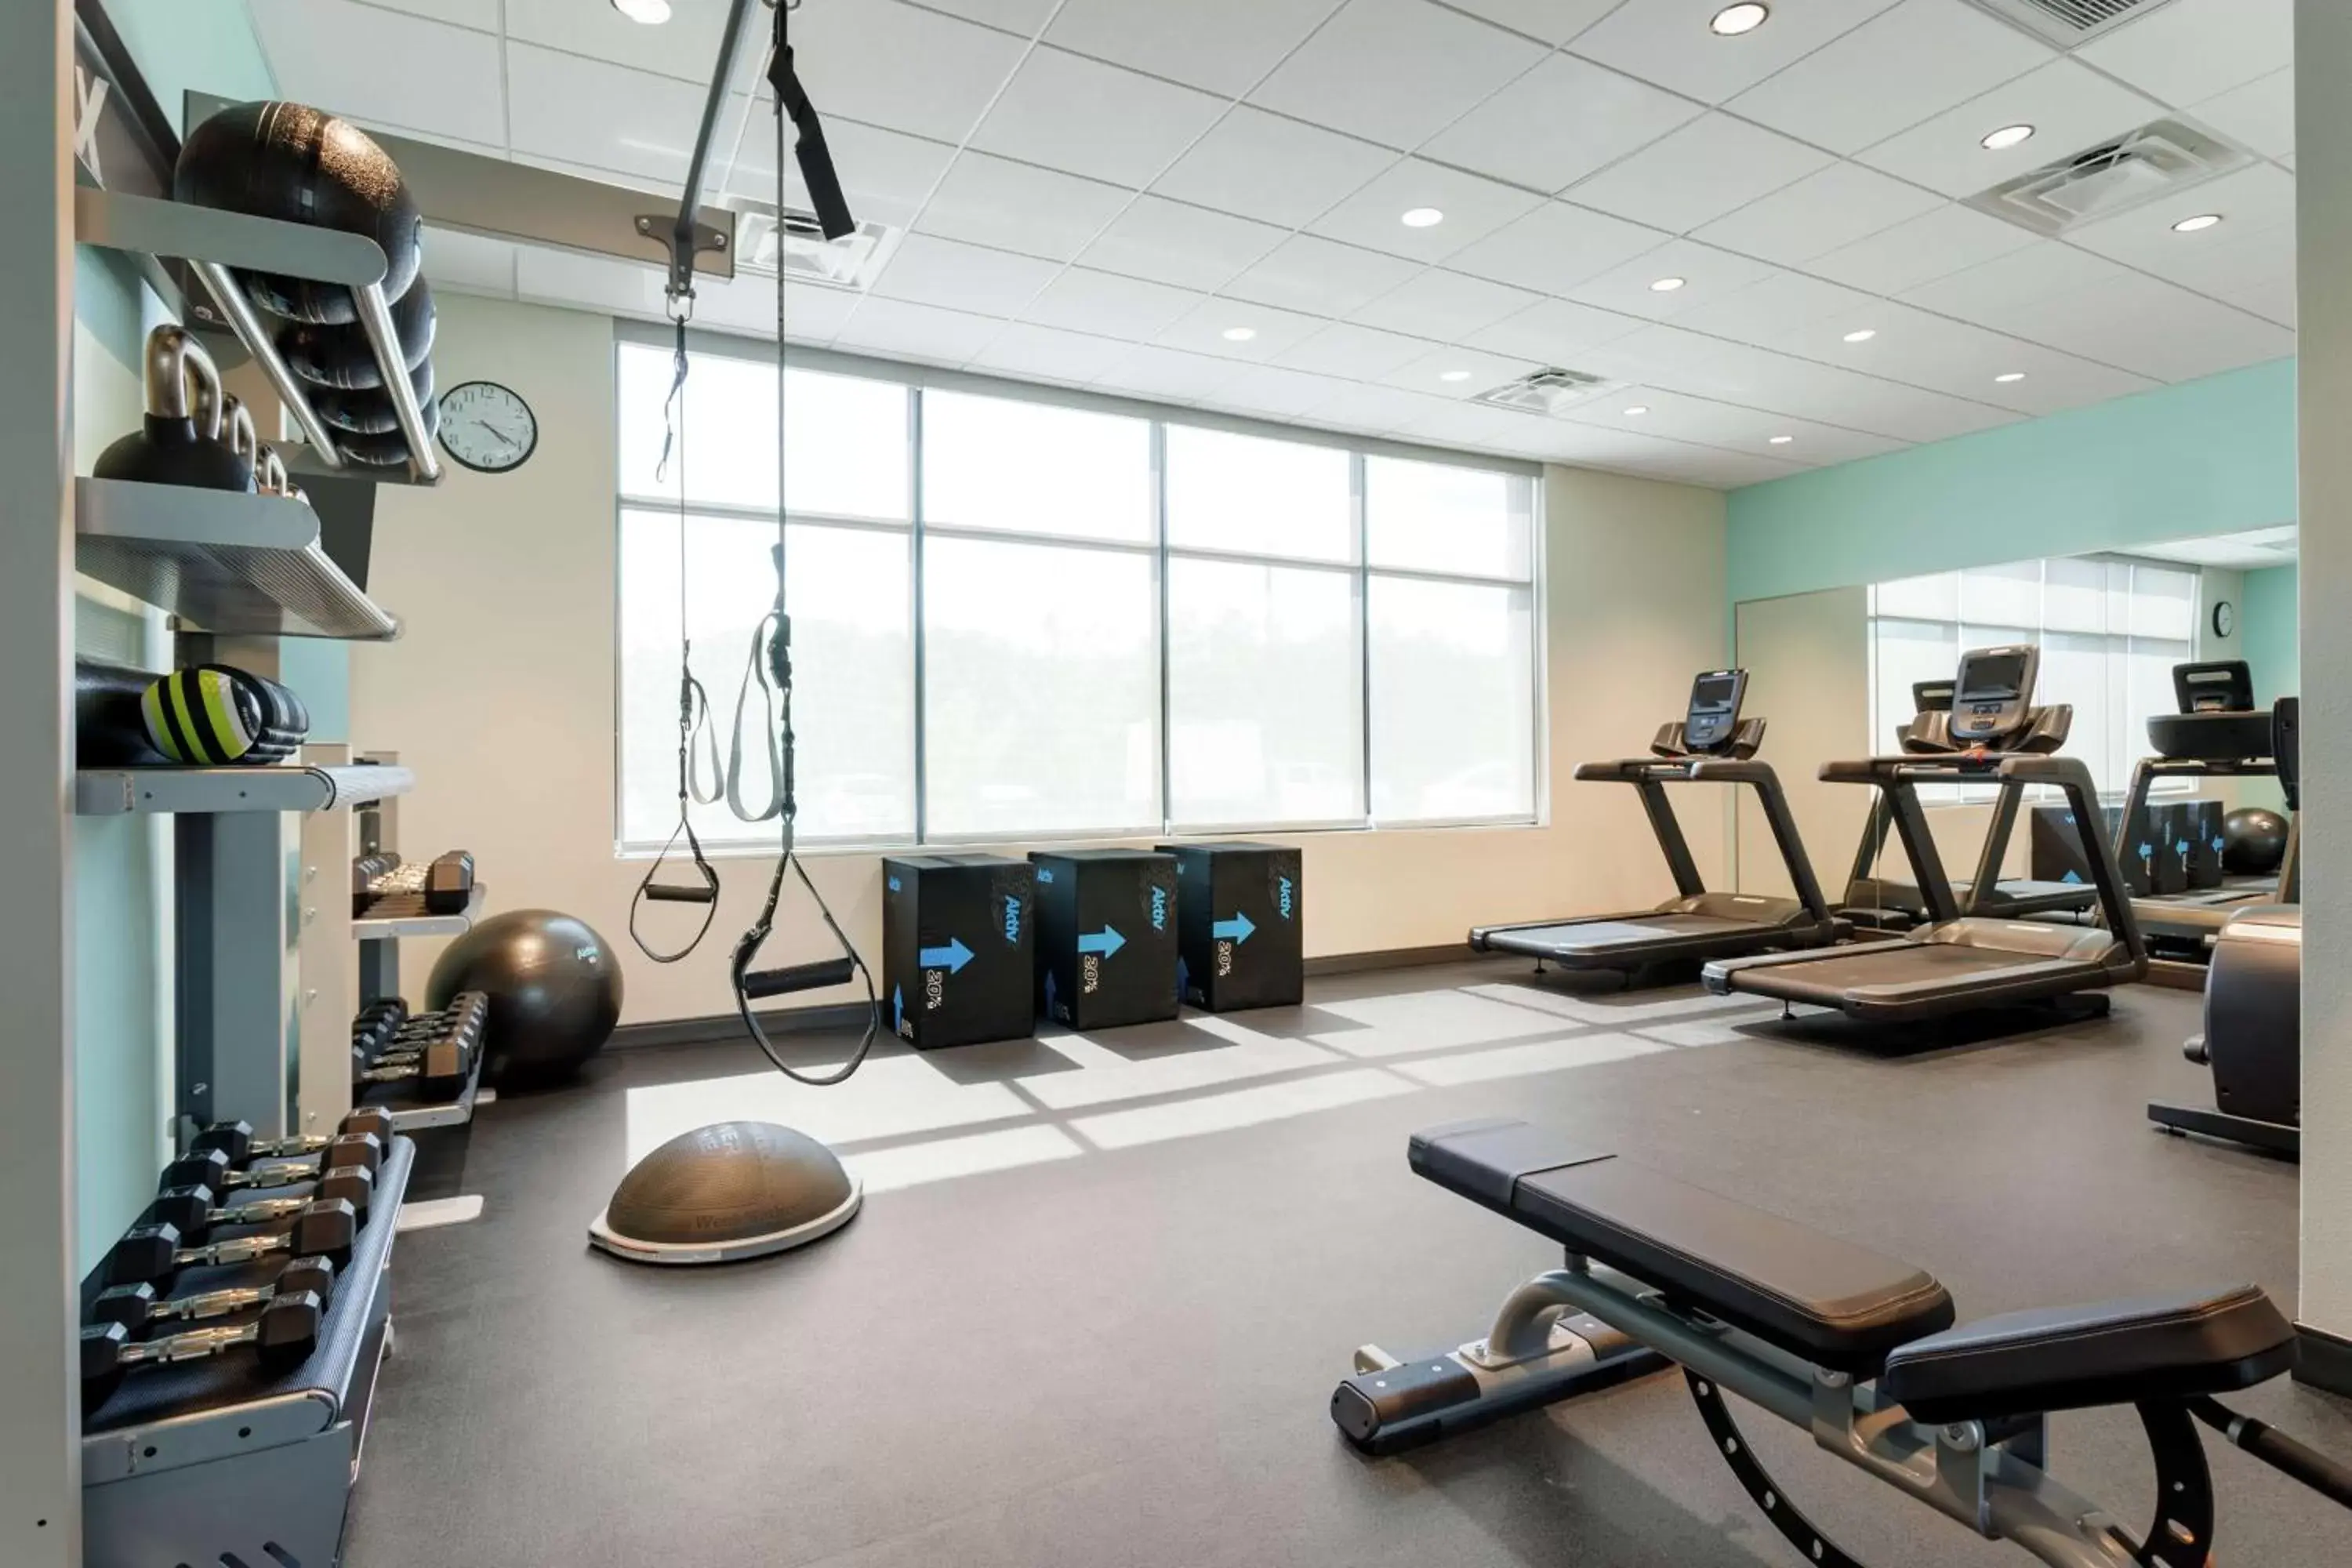 Fitness centre/facilities, Fitness Center/Facilities in Tru By Hilton Frisco Dallas, Tx